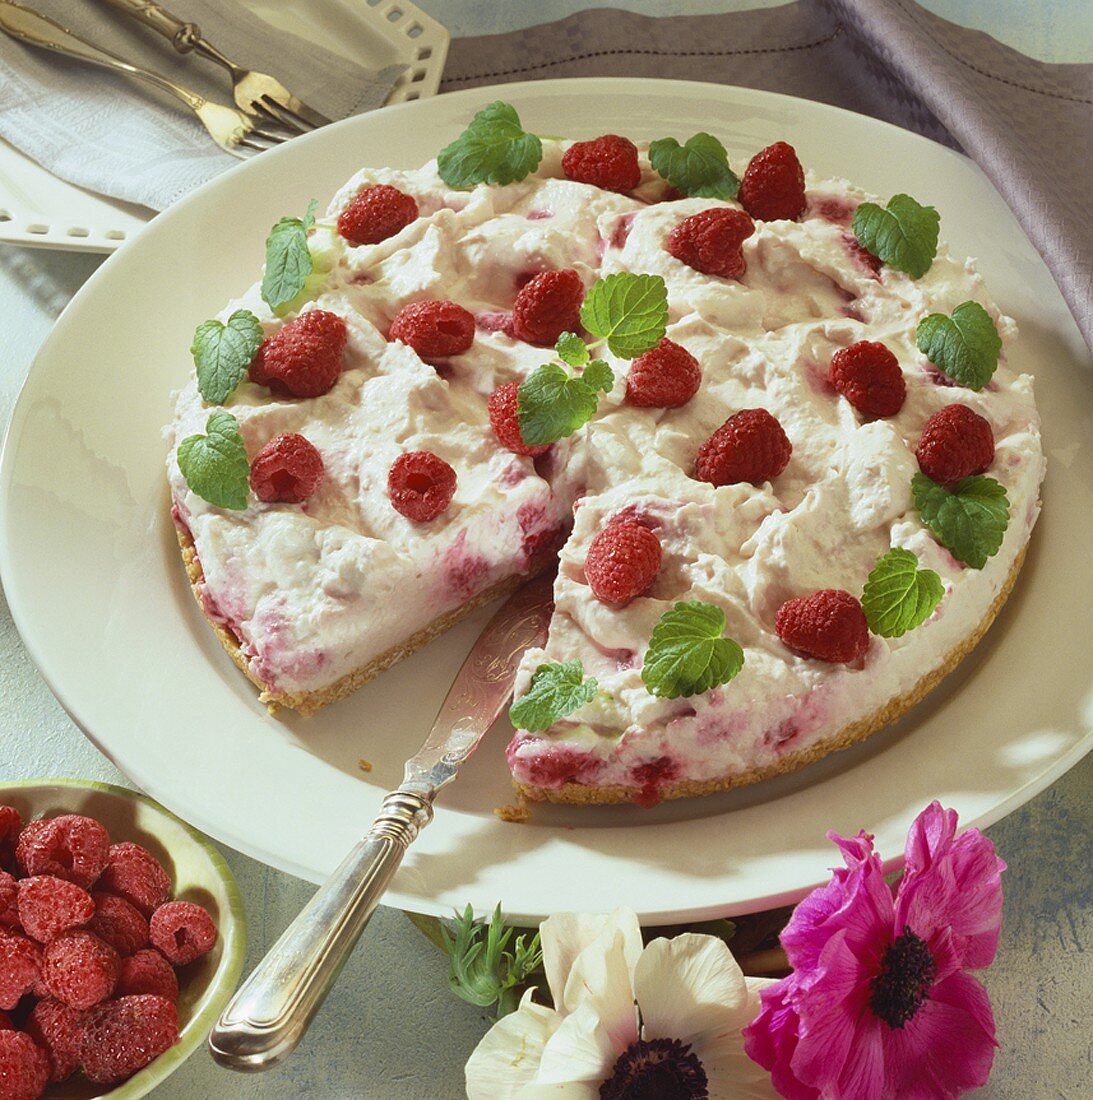 Raspberry cream torte, a piece cut